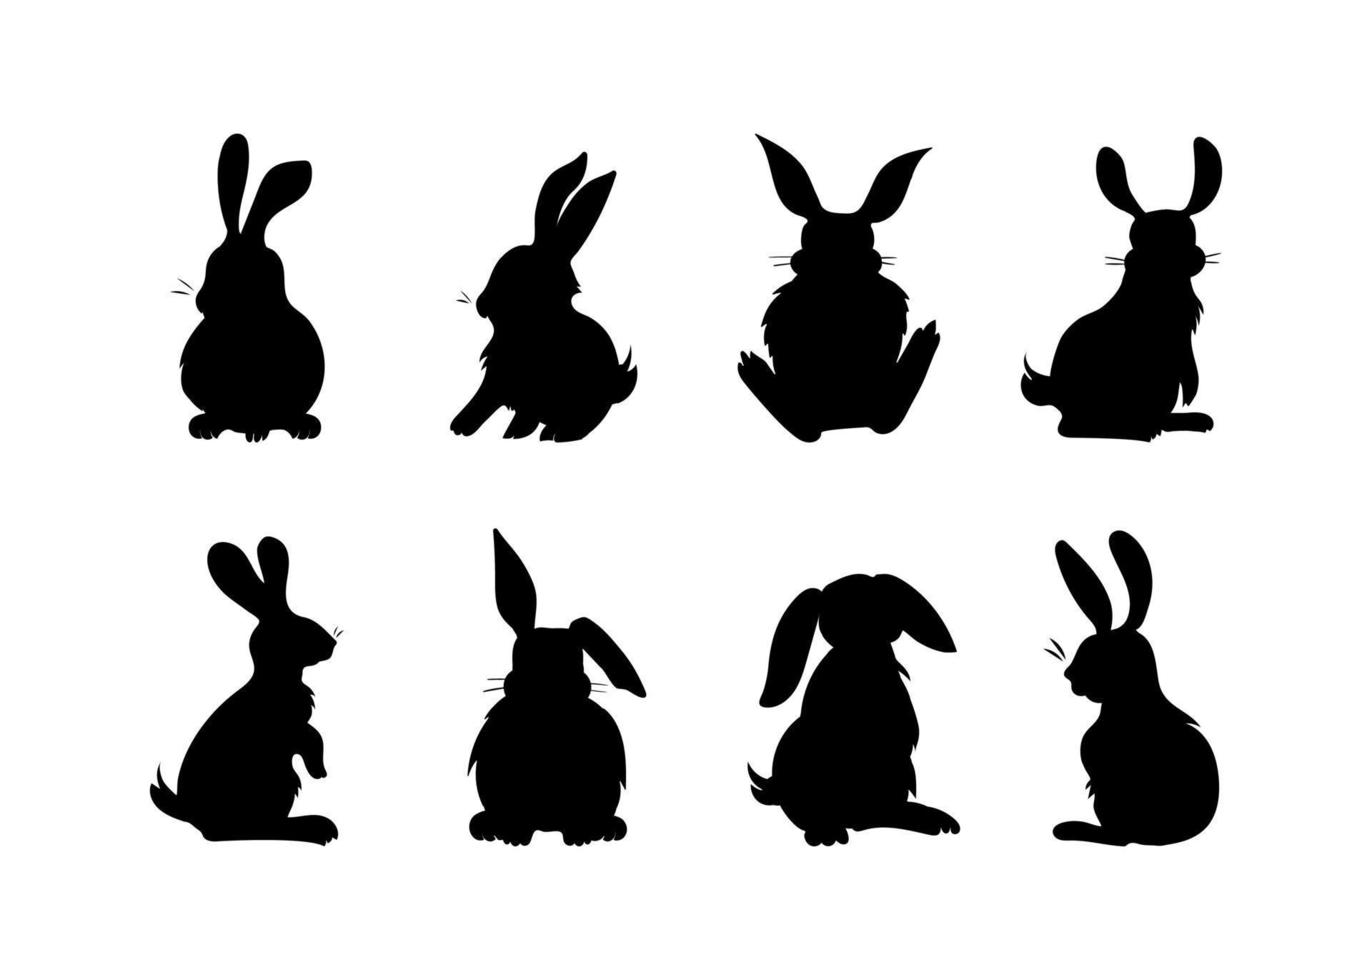 Reihe von Illustrationen von flauschigen Kaninchen, Hasen. Hasen in verschiedenen Posen. handgezeichnete Silhouetten mit schwarzer Farbfüllung. künstlerische symbolische clipart in einfachen linien für drucke vektor